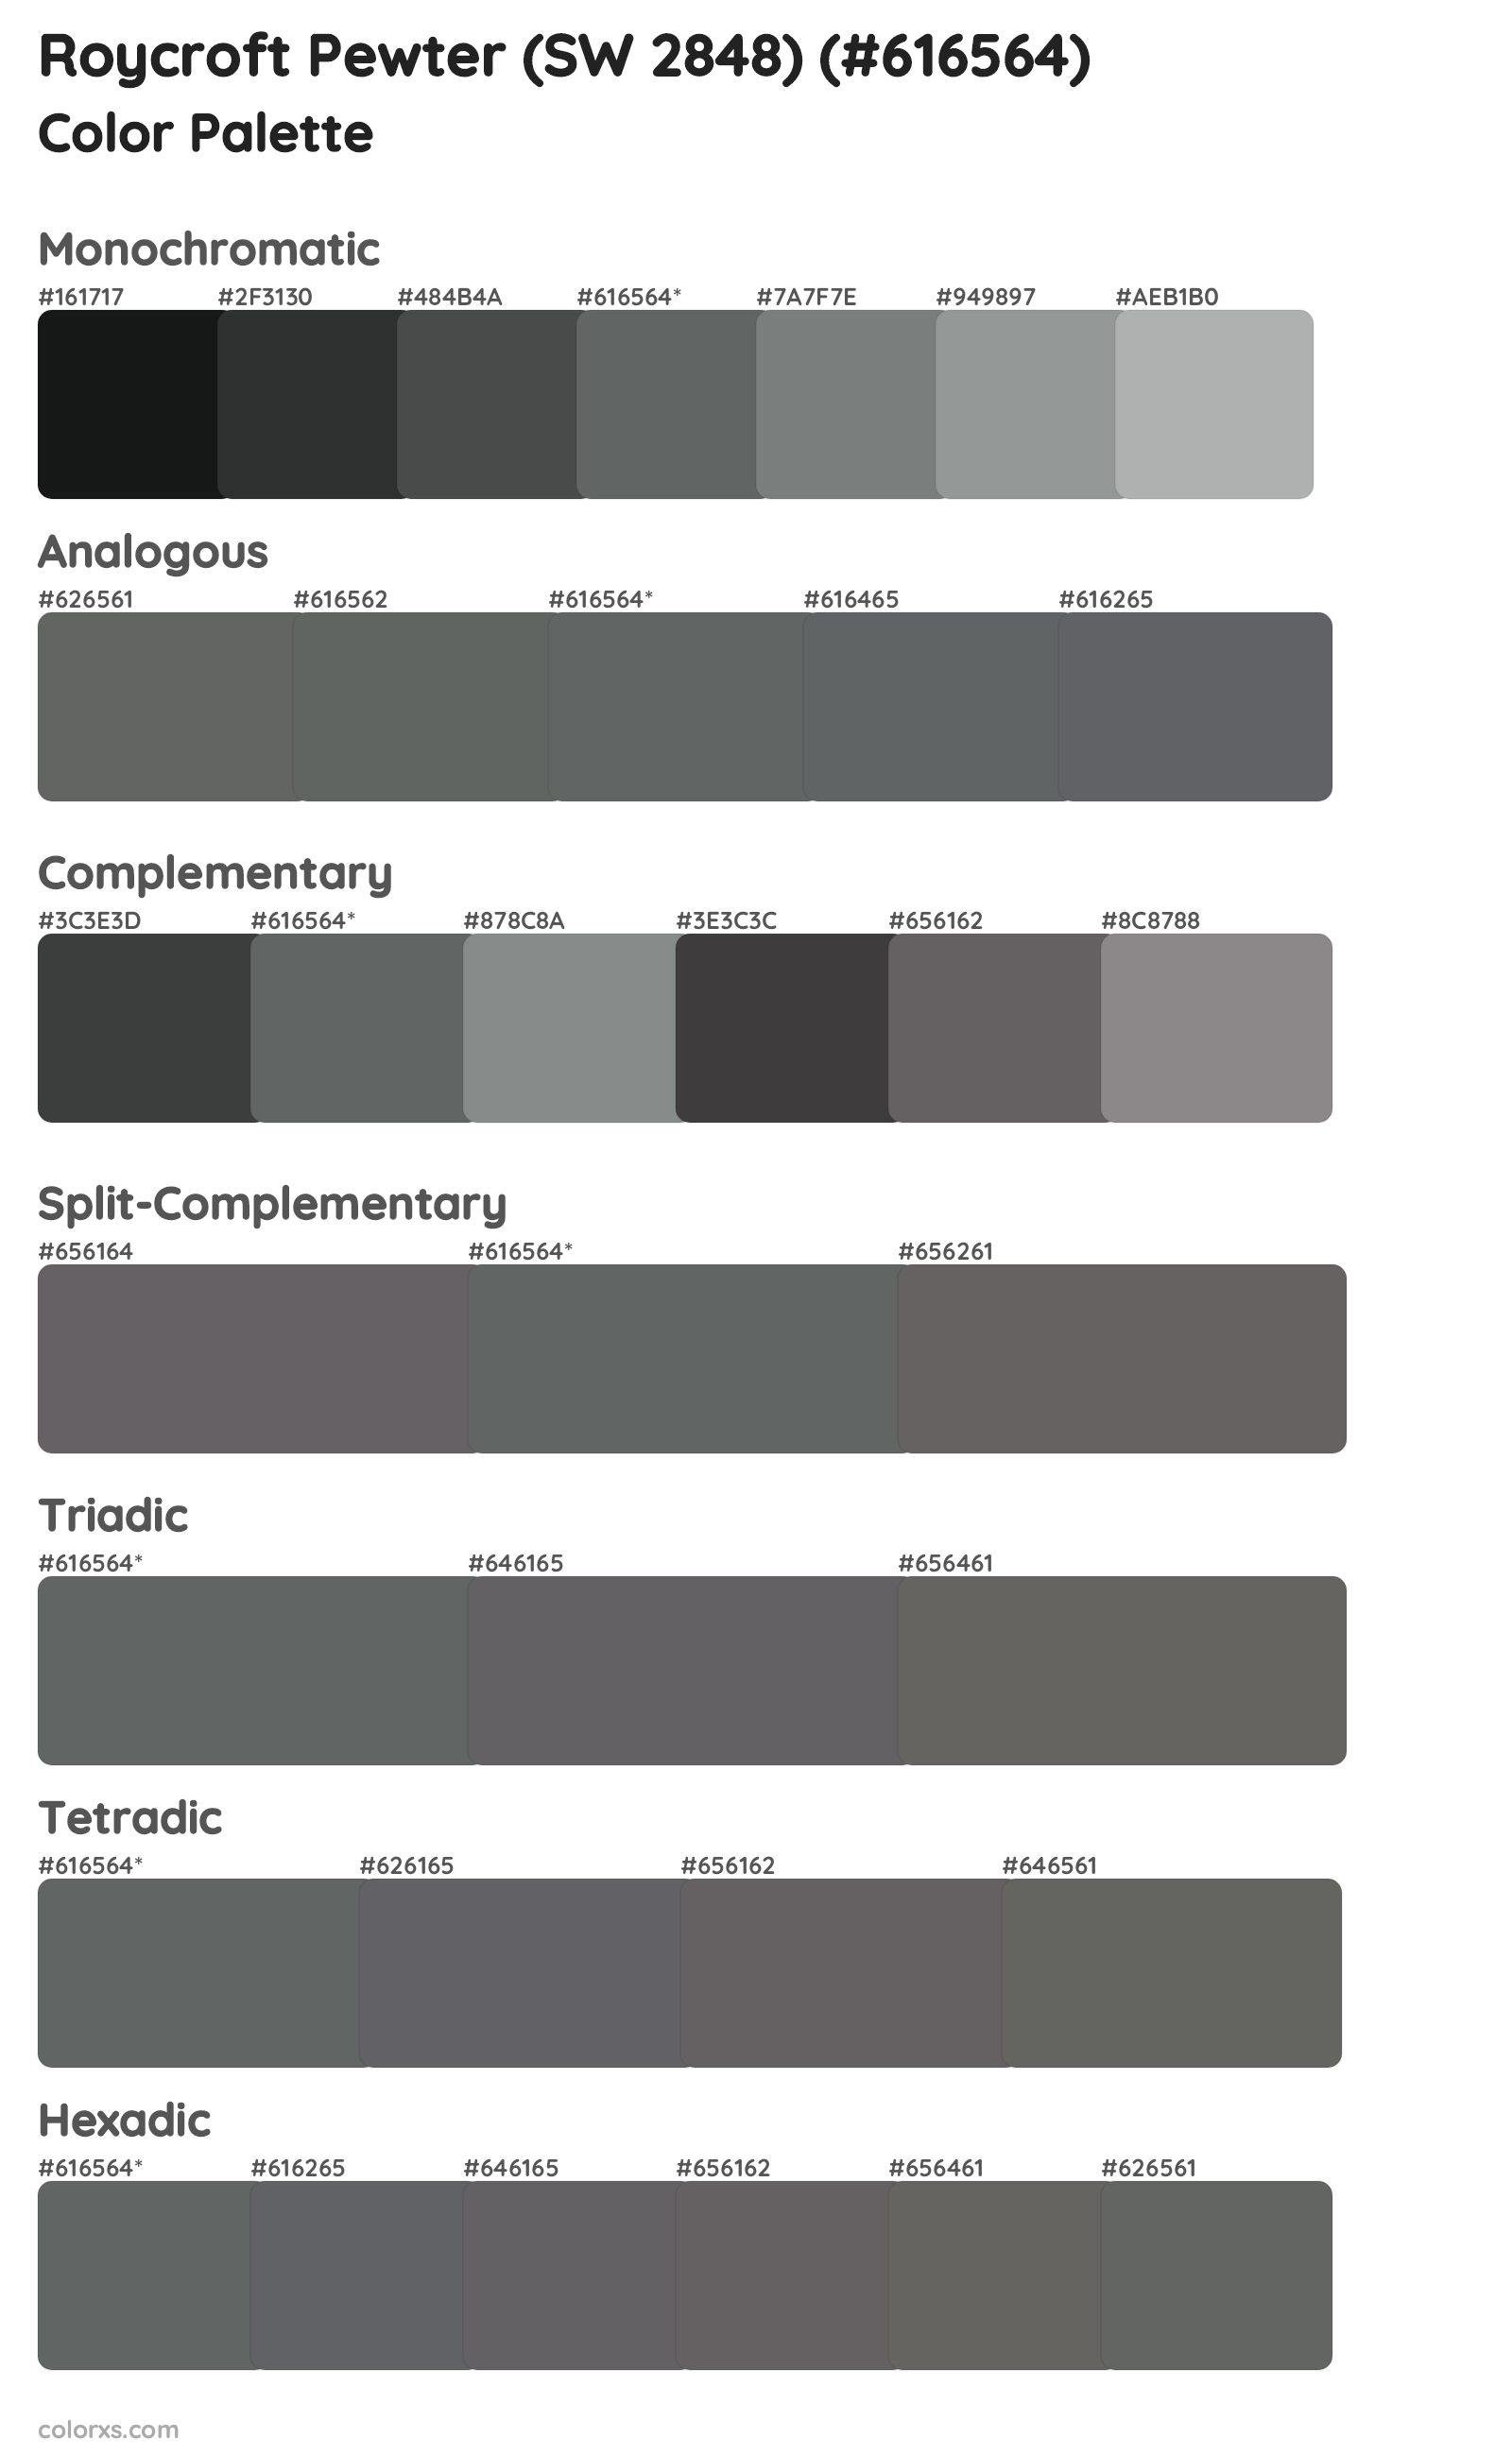 Roycroft Pewter (SW 2848) Color Scheme Palettes